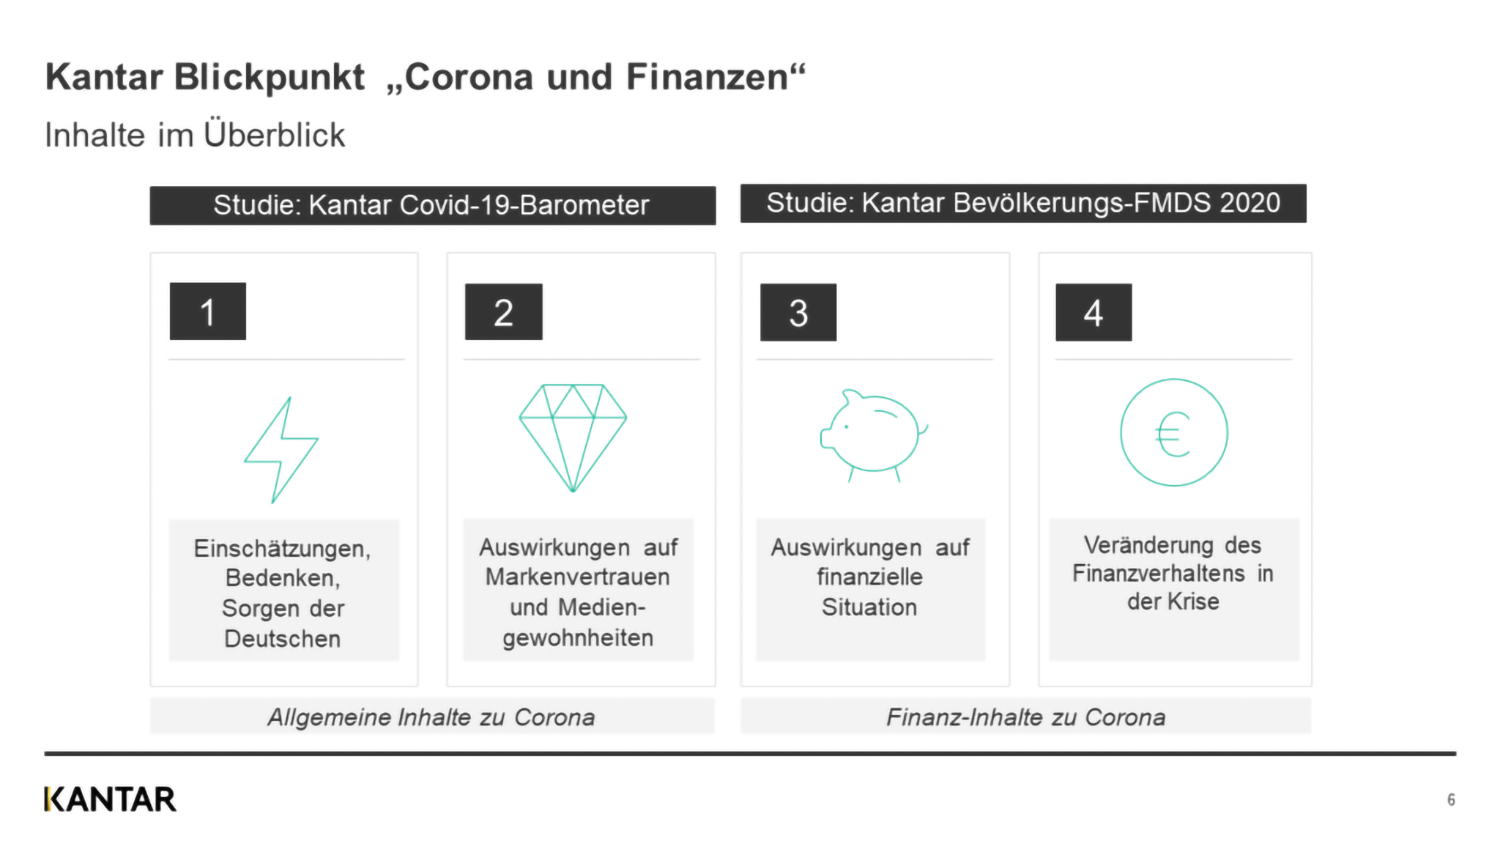 Wie wirkt sich die Coronakrise auf das Finanzverhalten in Deutschland aus?